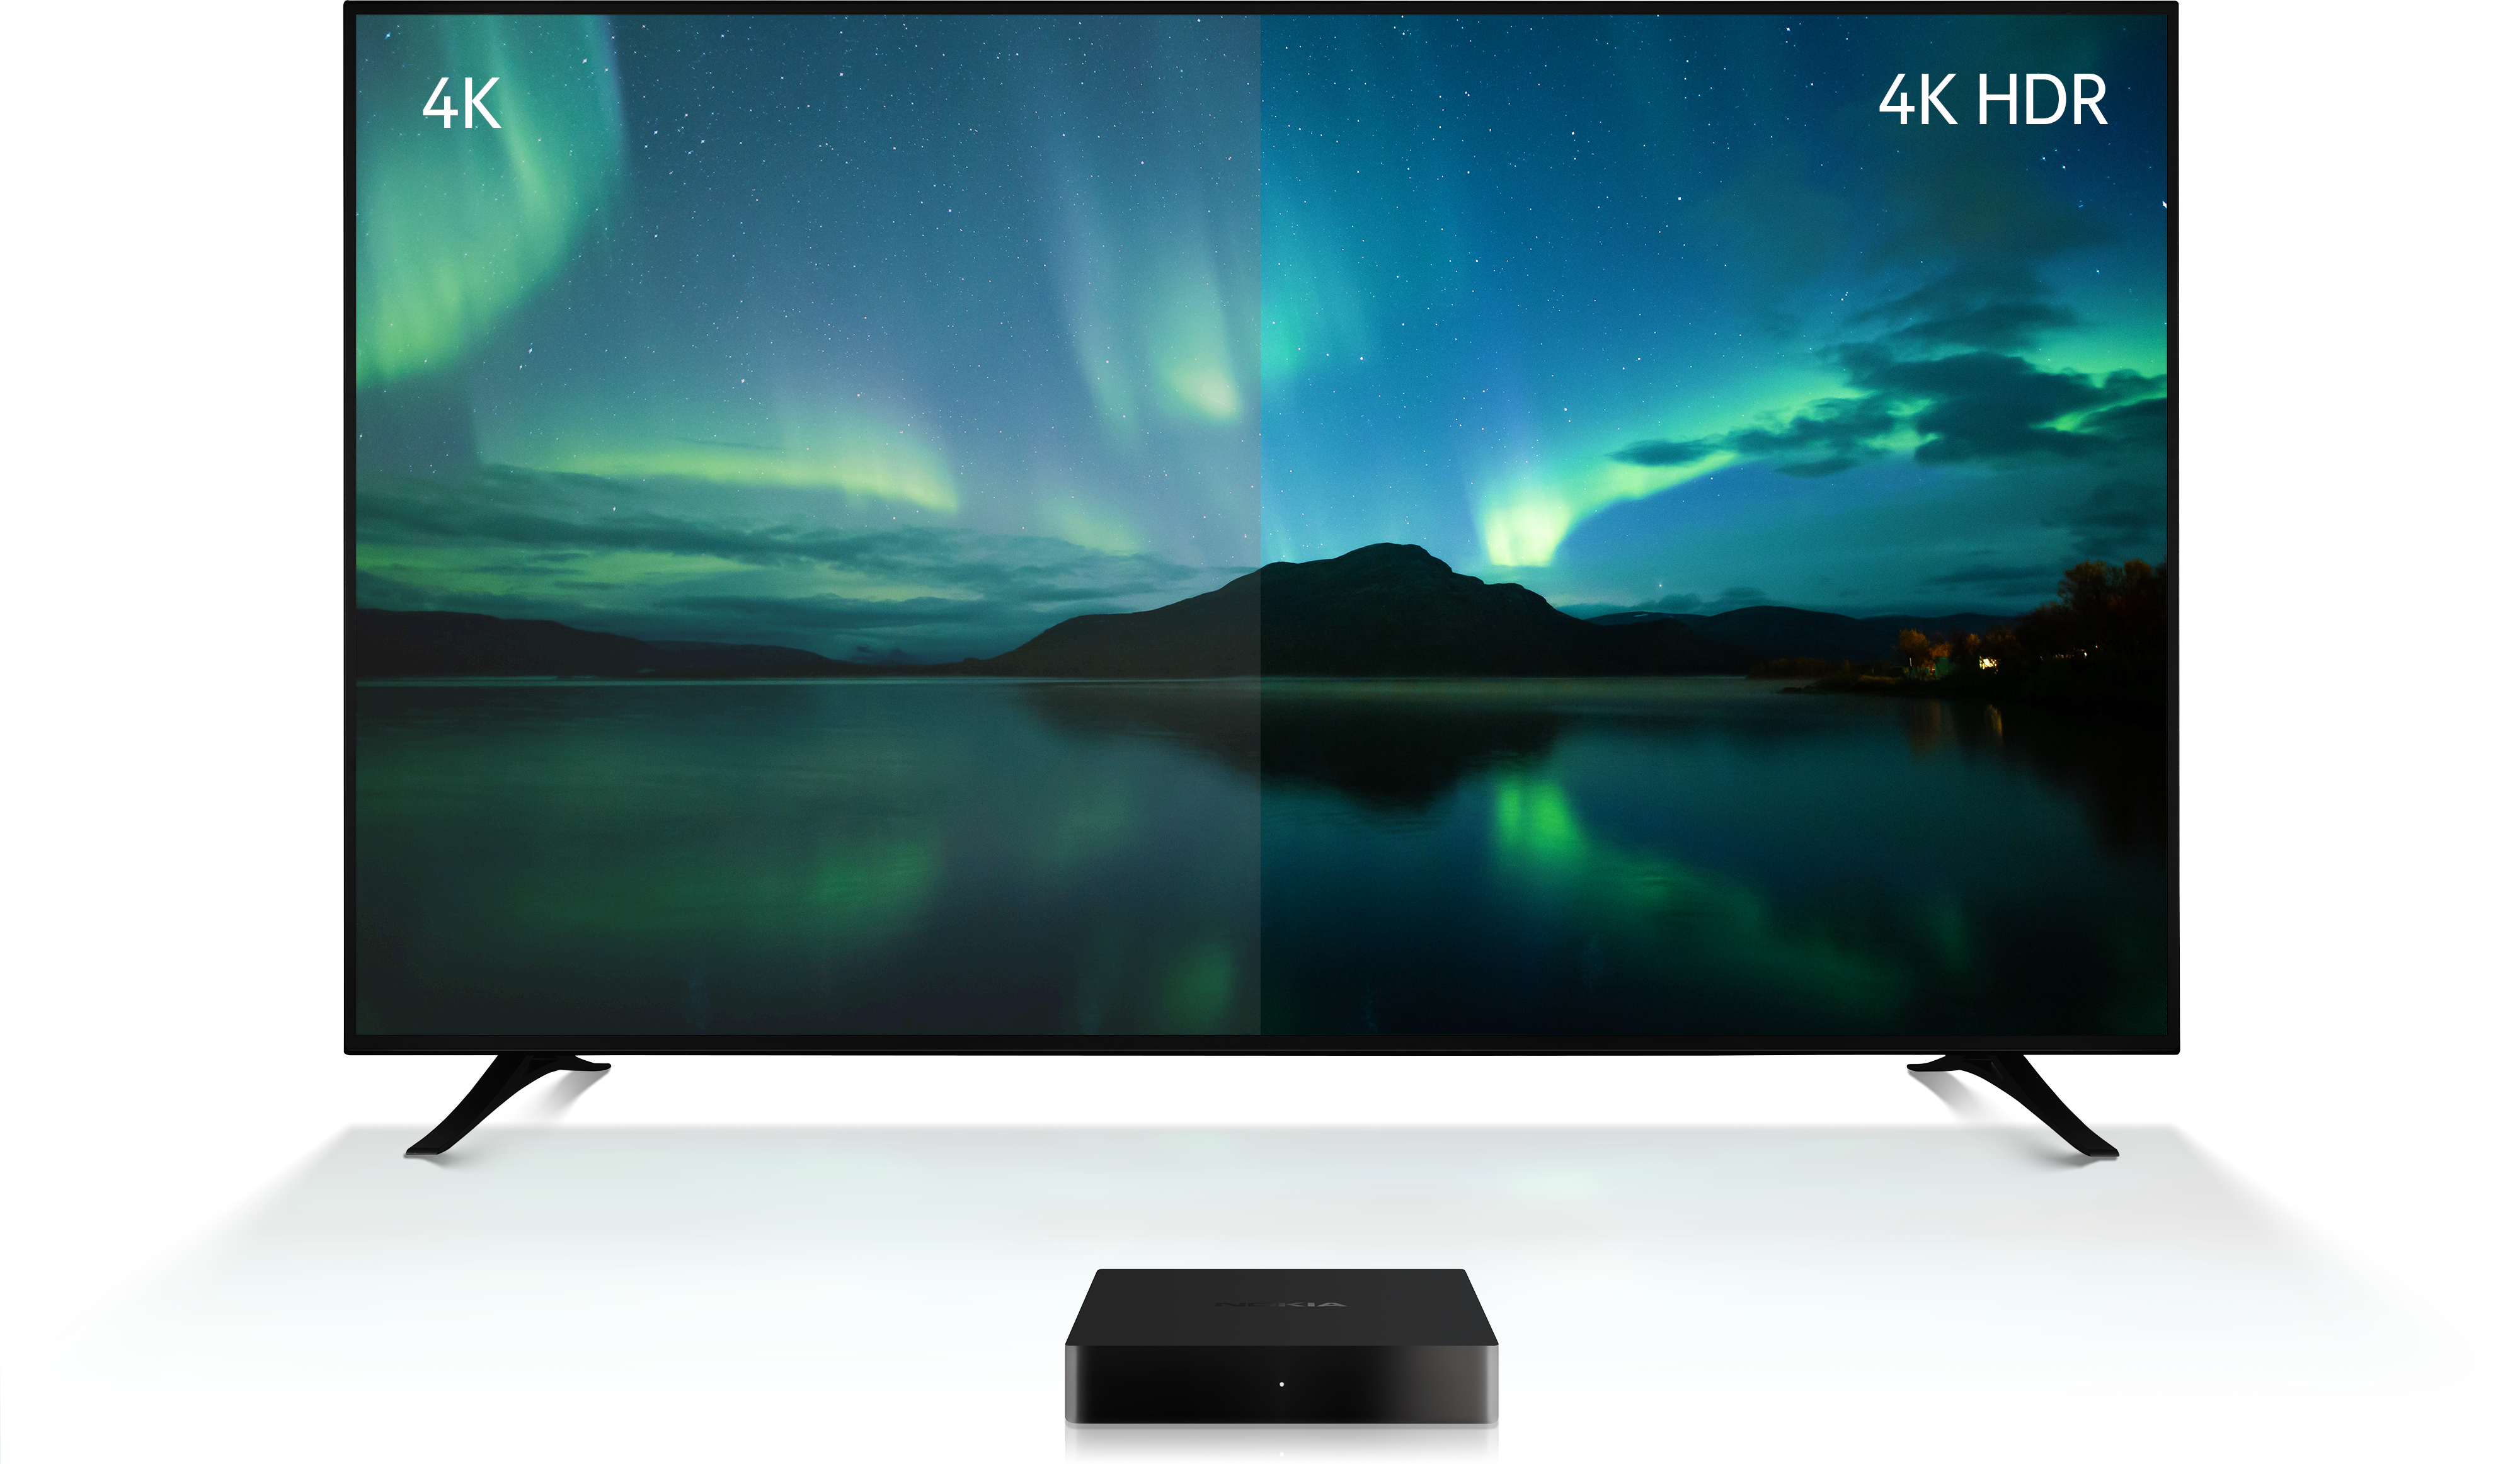 Nokia sorprende con un Android TV Box 4K con Chromecast integrado